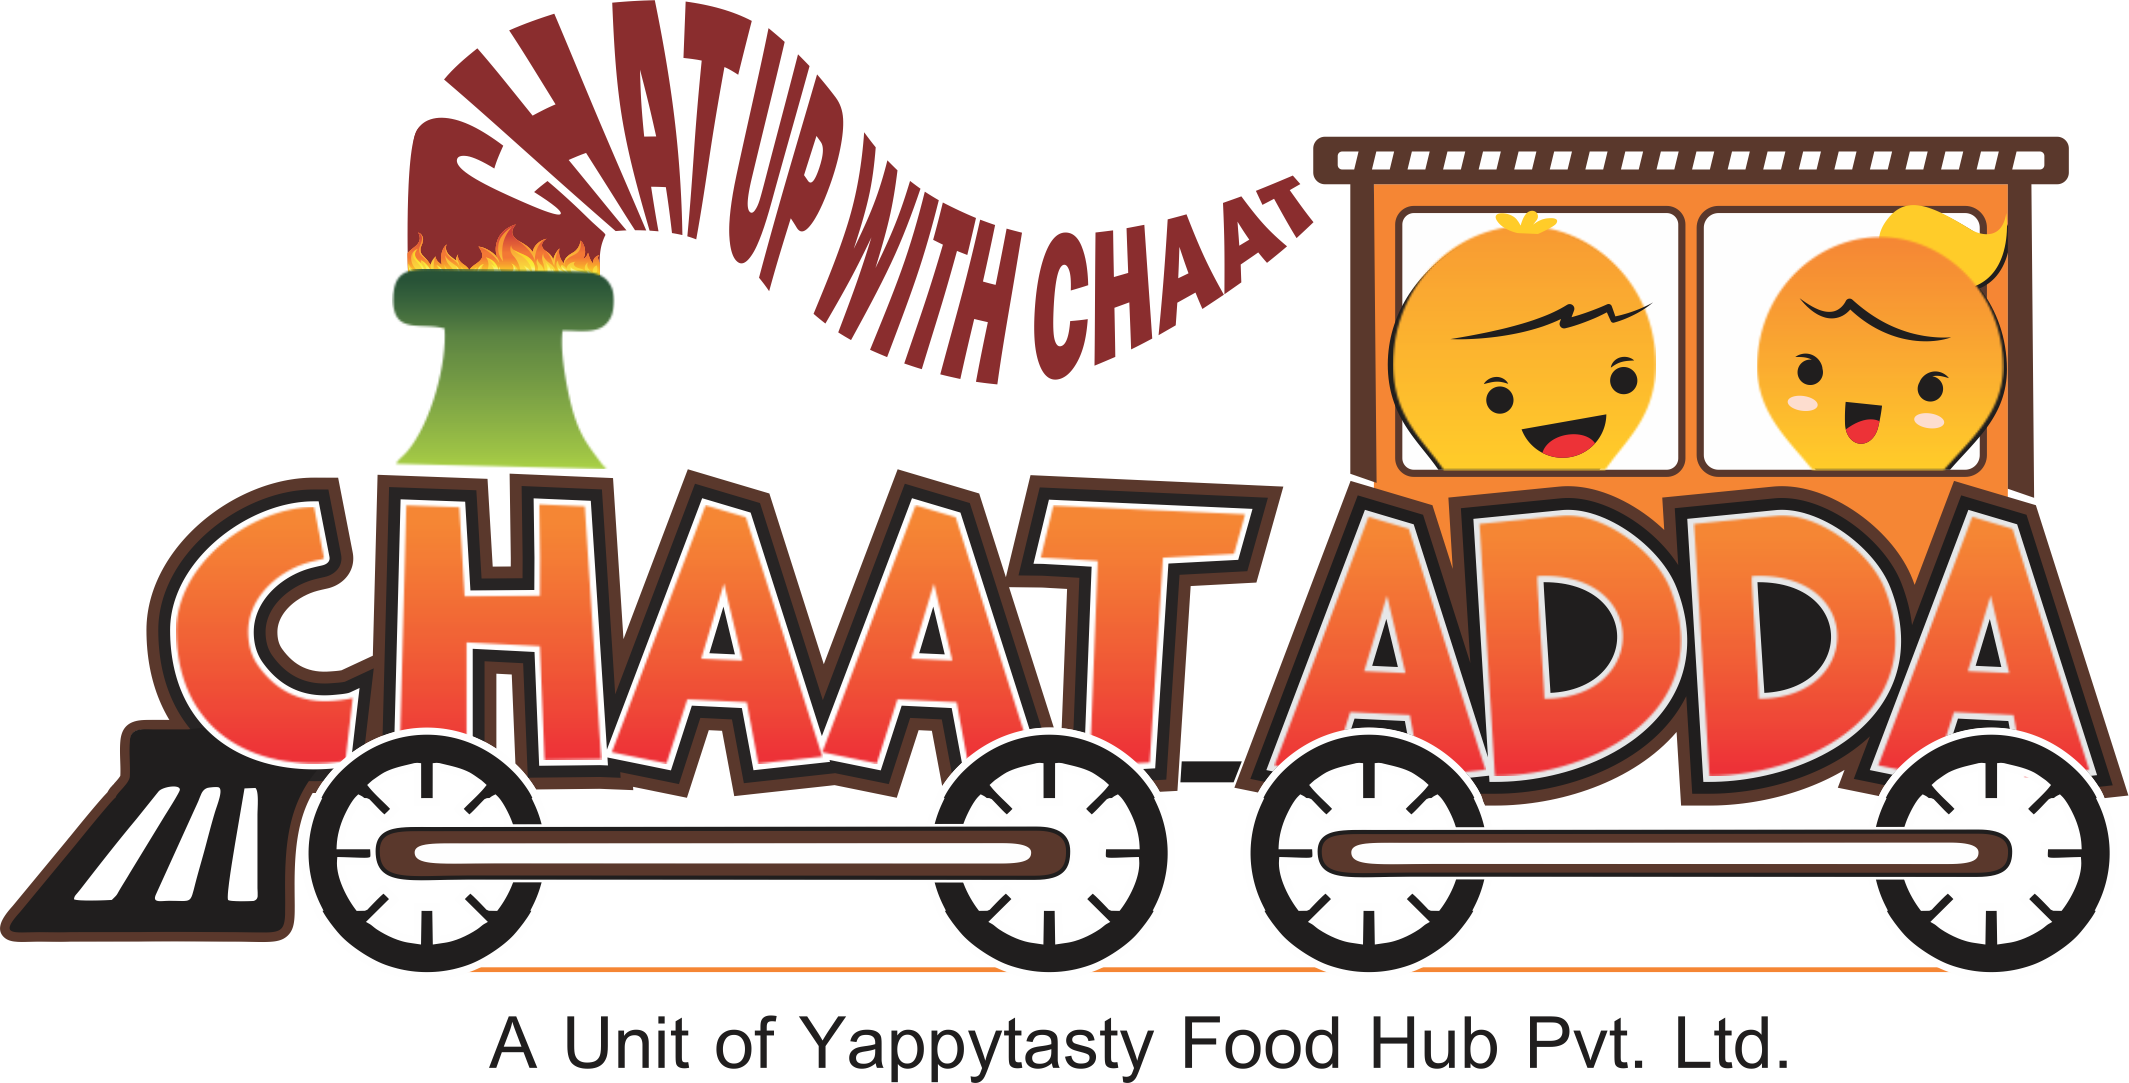 Chaatadda